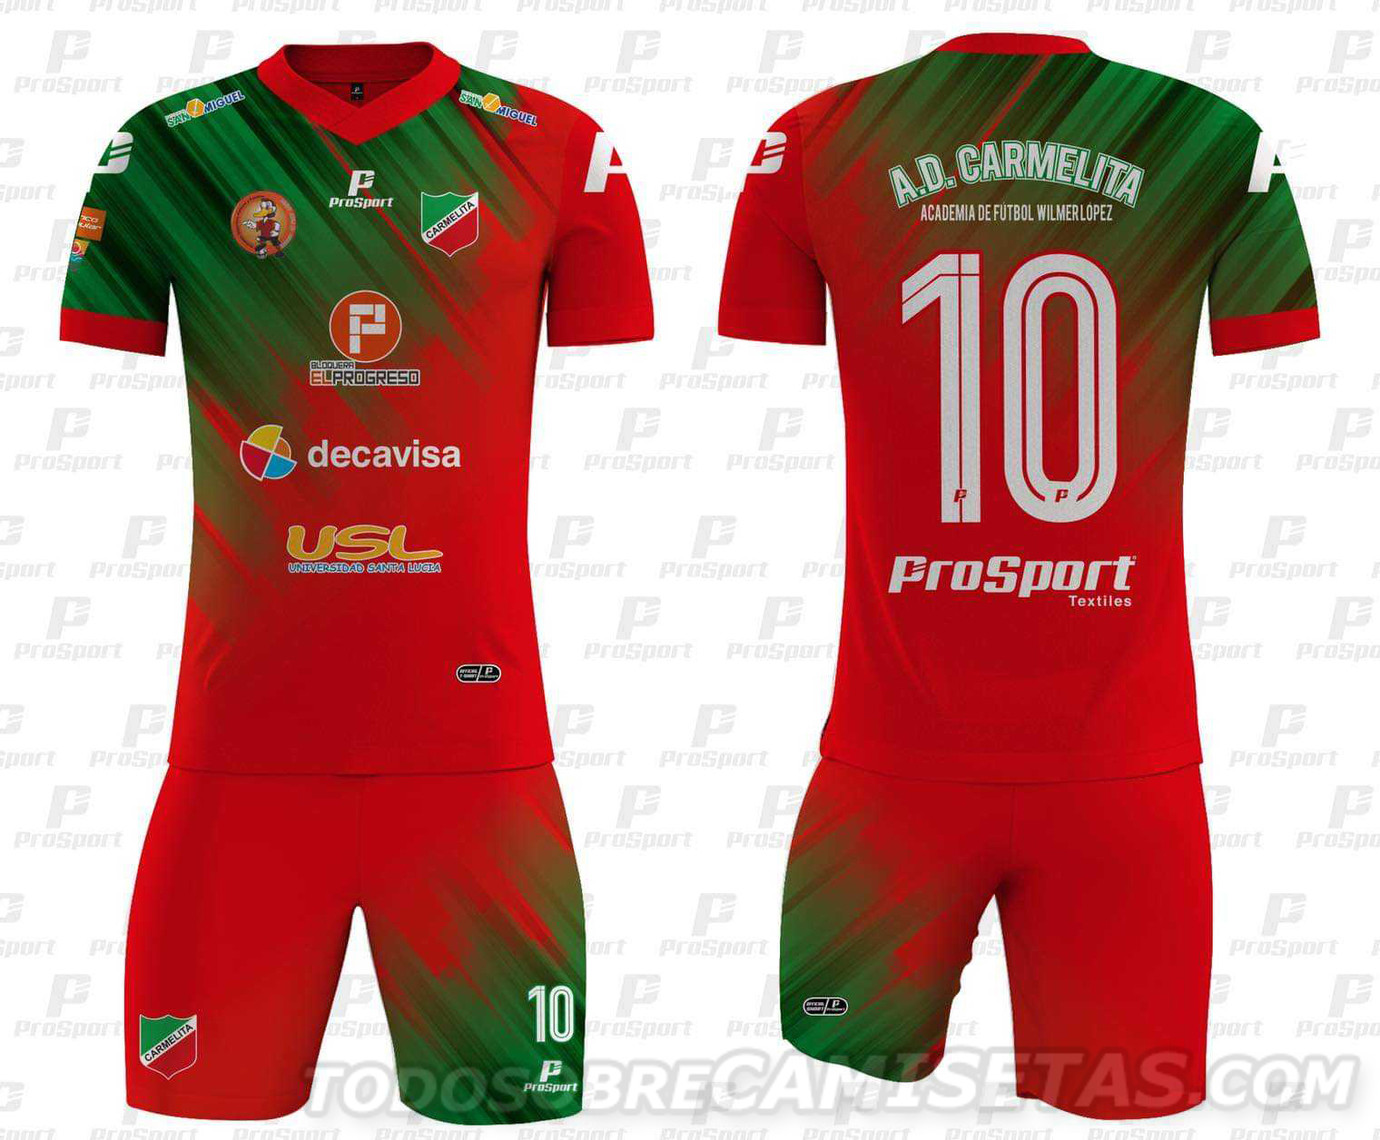 Camisetas ProSport de AD Carmelita Clausura 2019